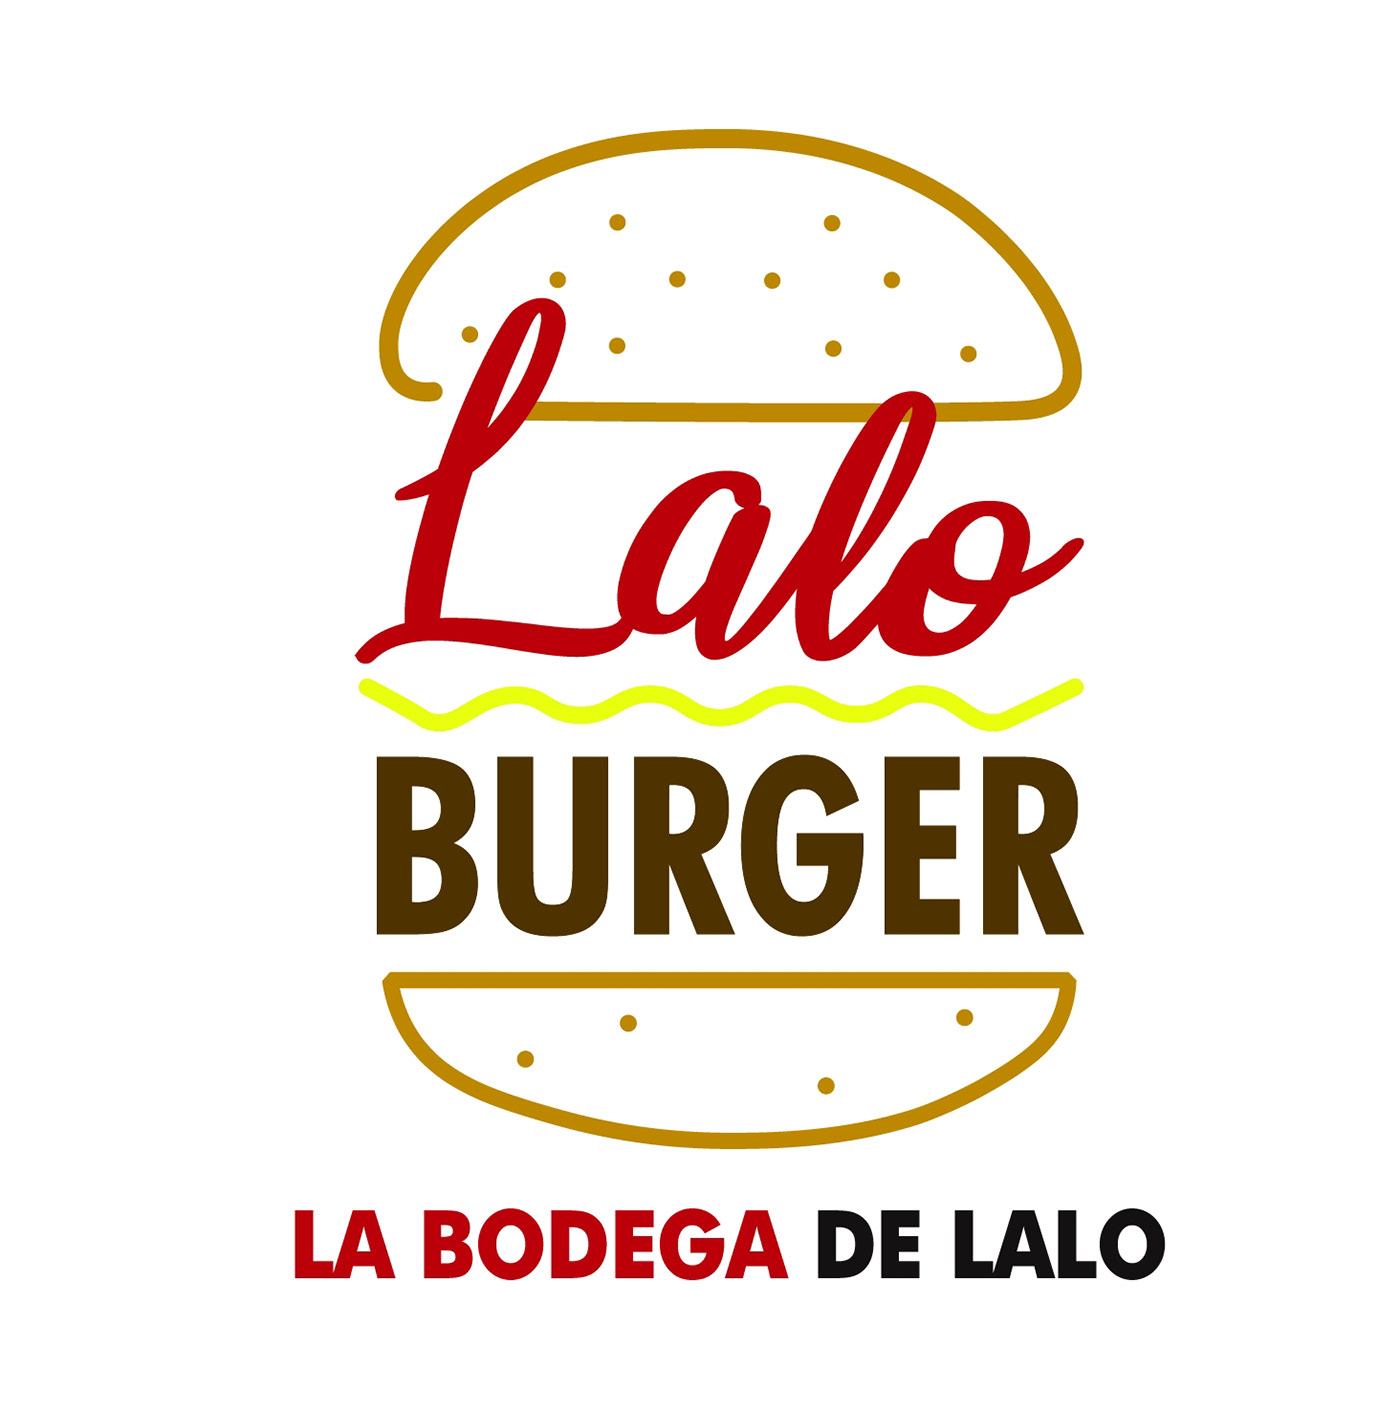 comida rápida diseño gráfico flyer hamburguer Hamburguesa logotipos  marketing   publicidad